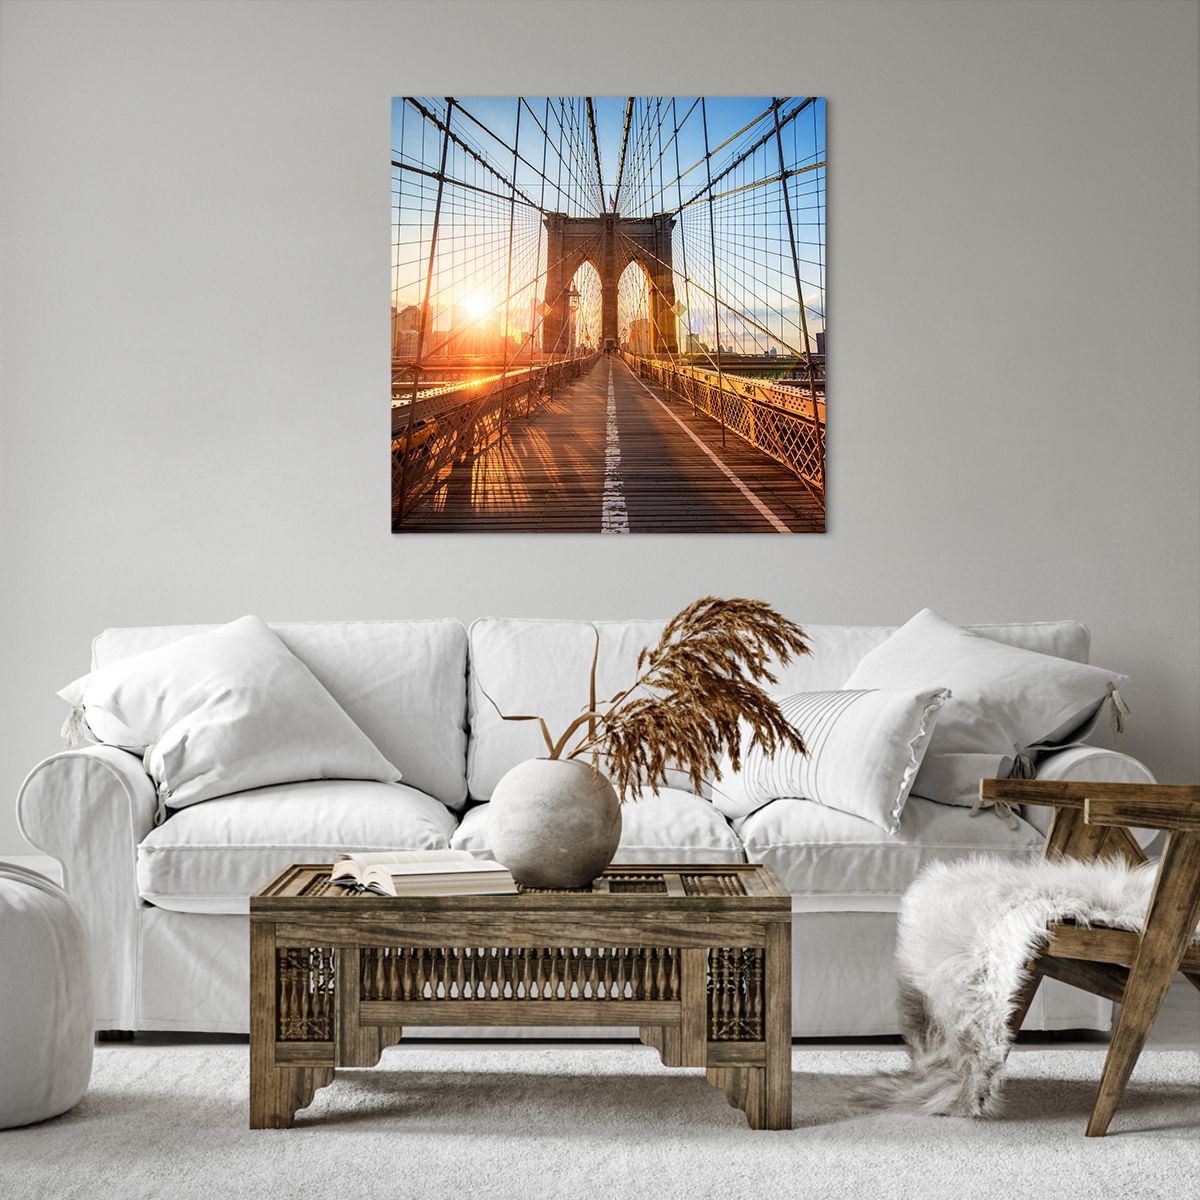 Obrazy na płótnie Nowy Jork, Obrazy na płótnie Most Brookliński, Obrazy na płótnie Architektura, Obrazy na płótnie Manhattan, Obrazy na płótnie Słońce